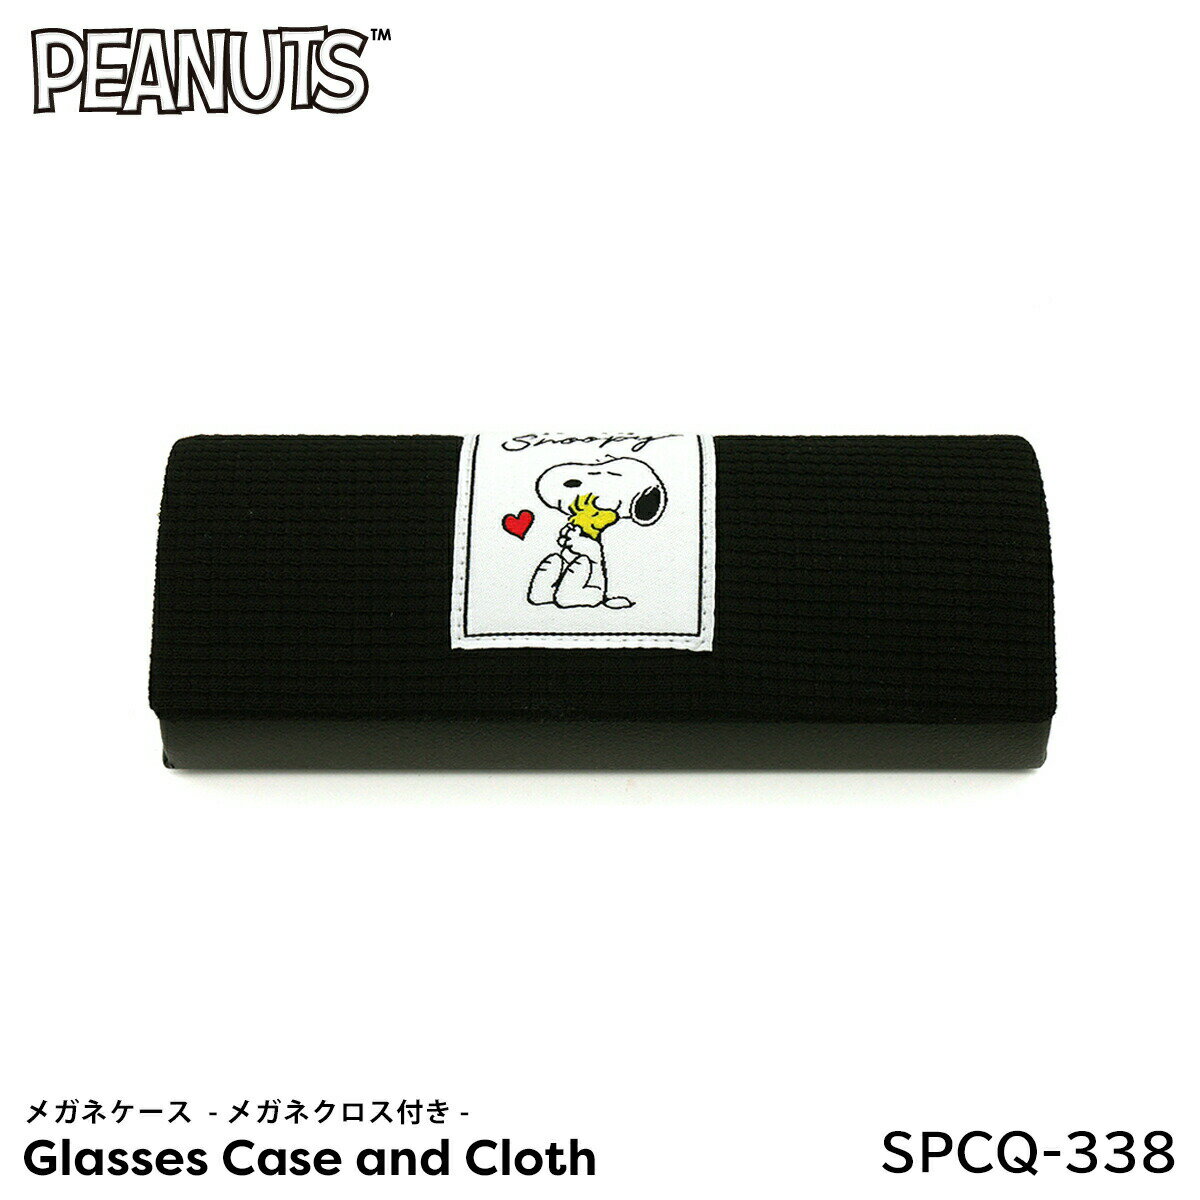 メガネケース スヌーピー キャラクター SPCQ-338 BK PEANUTS メガネクロス付き メガネ拭き ポコポコ ブラック マリモクラフト